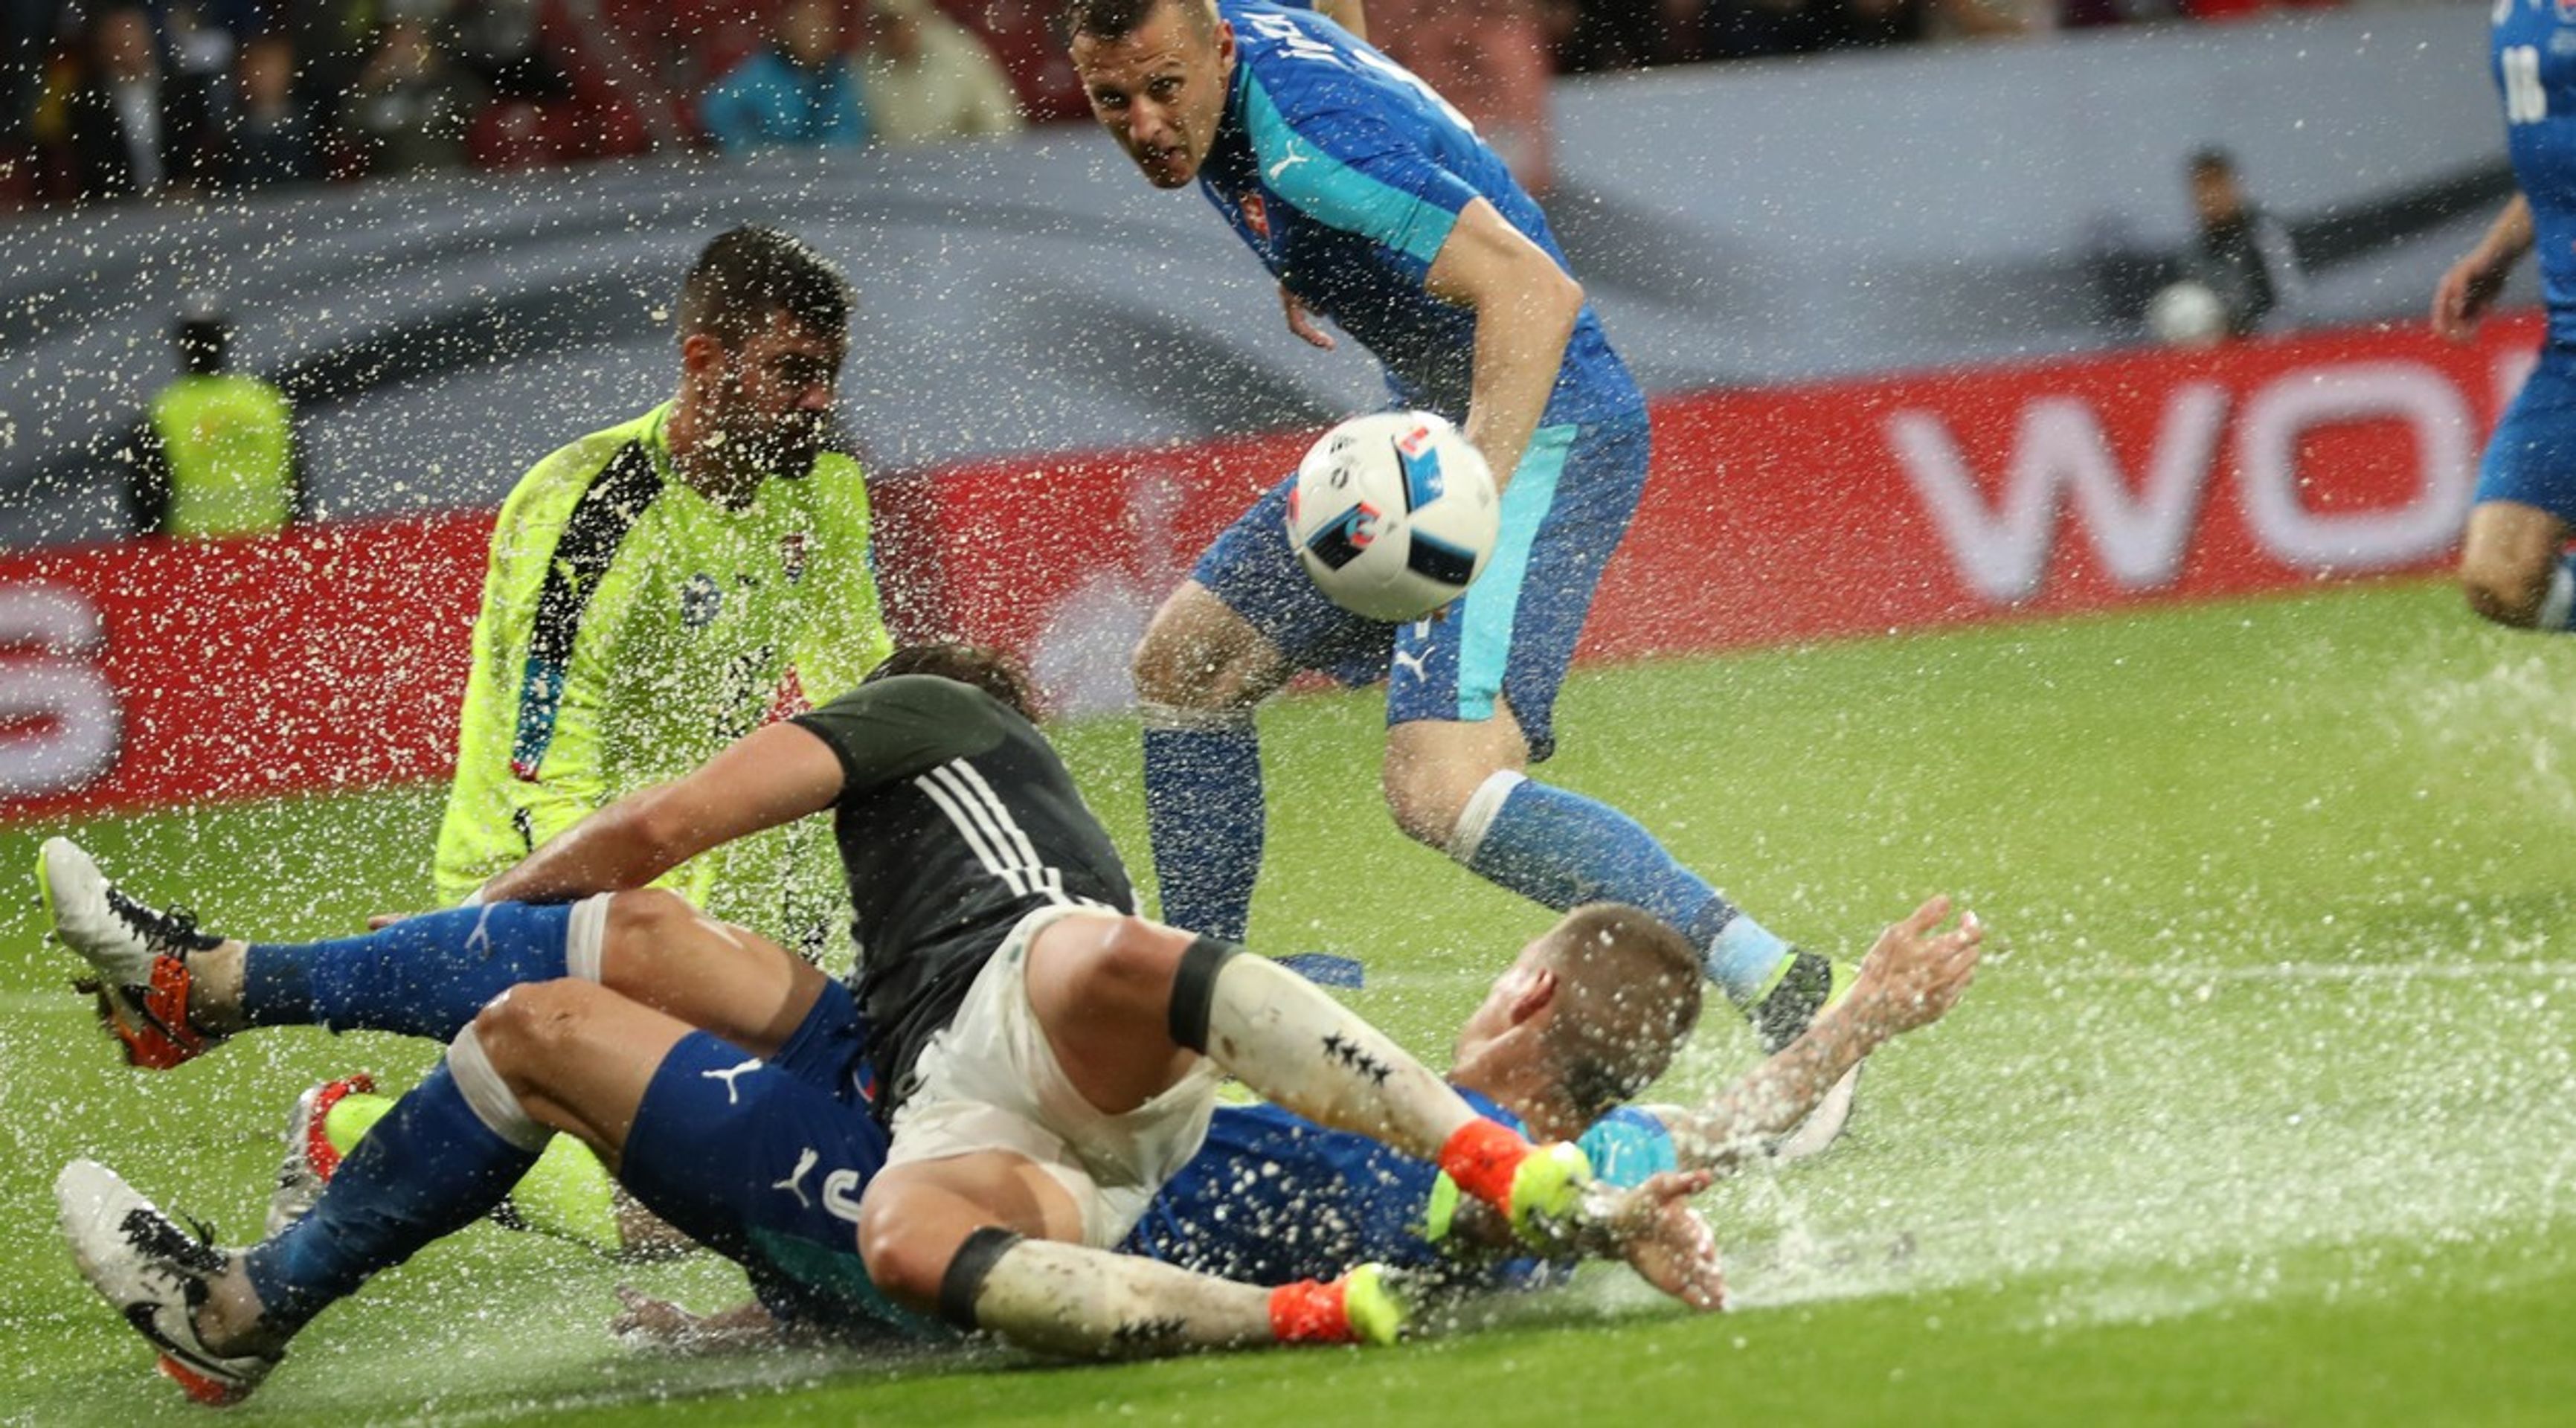 Německo - Slovensko 1:3, fotbal ve vodě - GALERIE: Německo - Slovensko 1:3 (1/4)